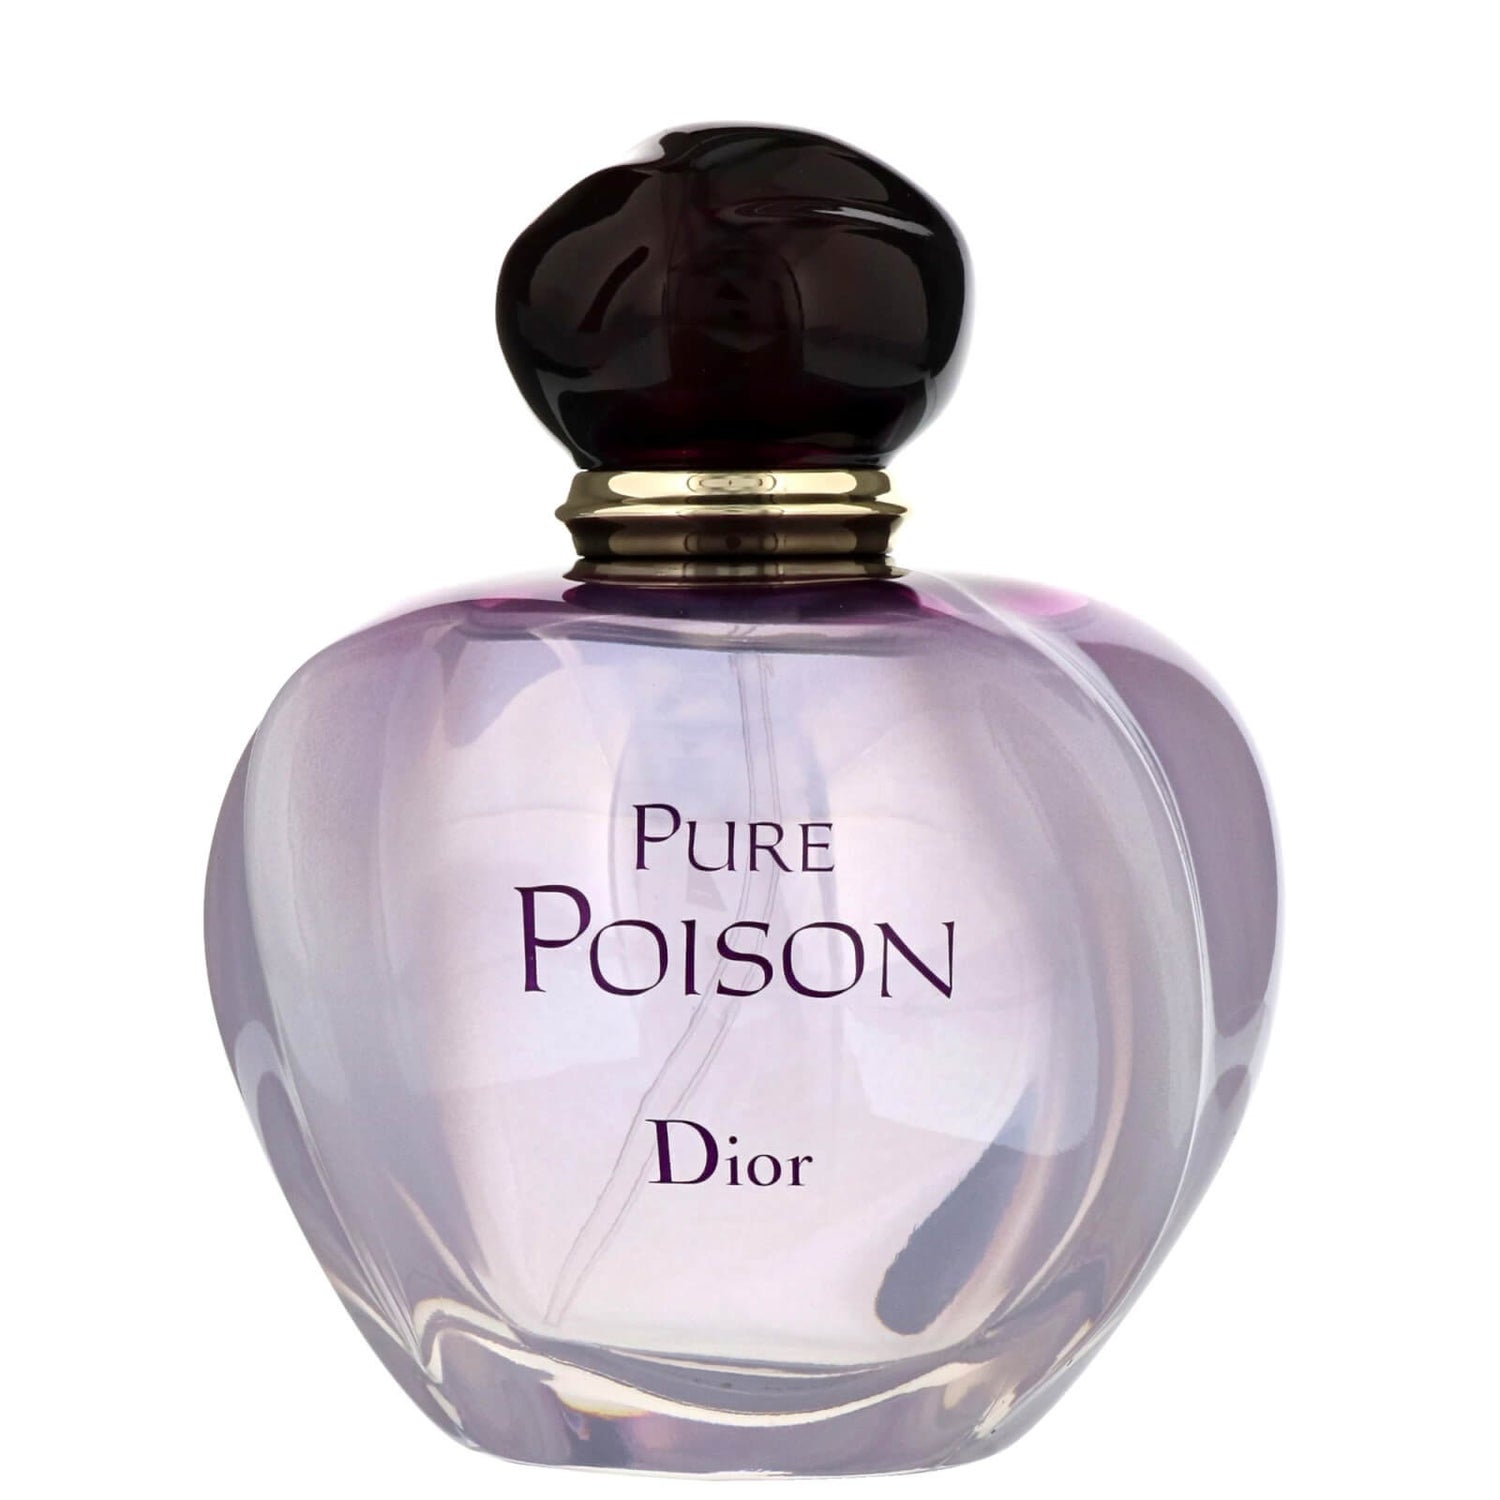 Pure Poison by Dior 3.4 oz Eau de Parfum Spray OPEN BOX NEW